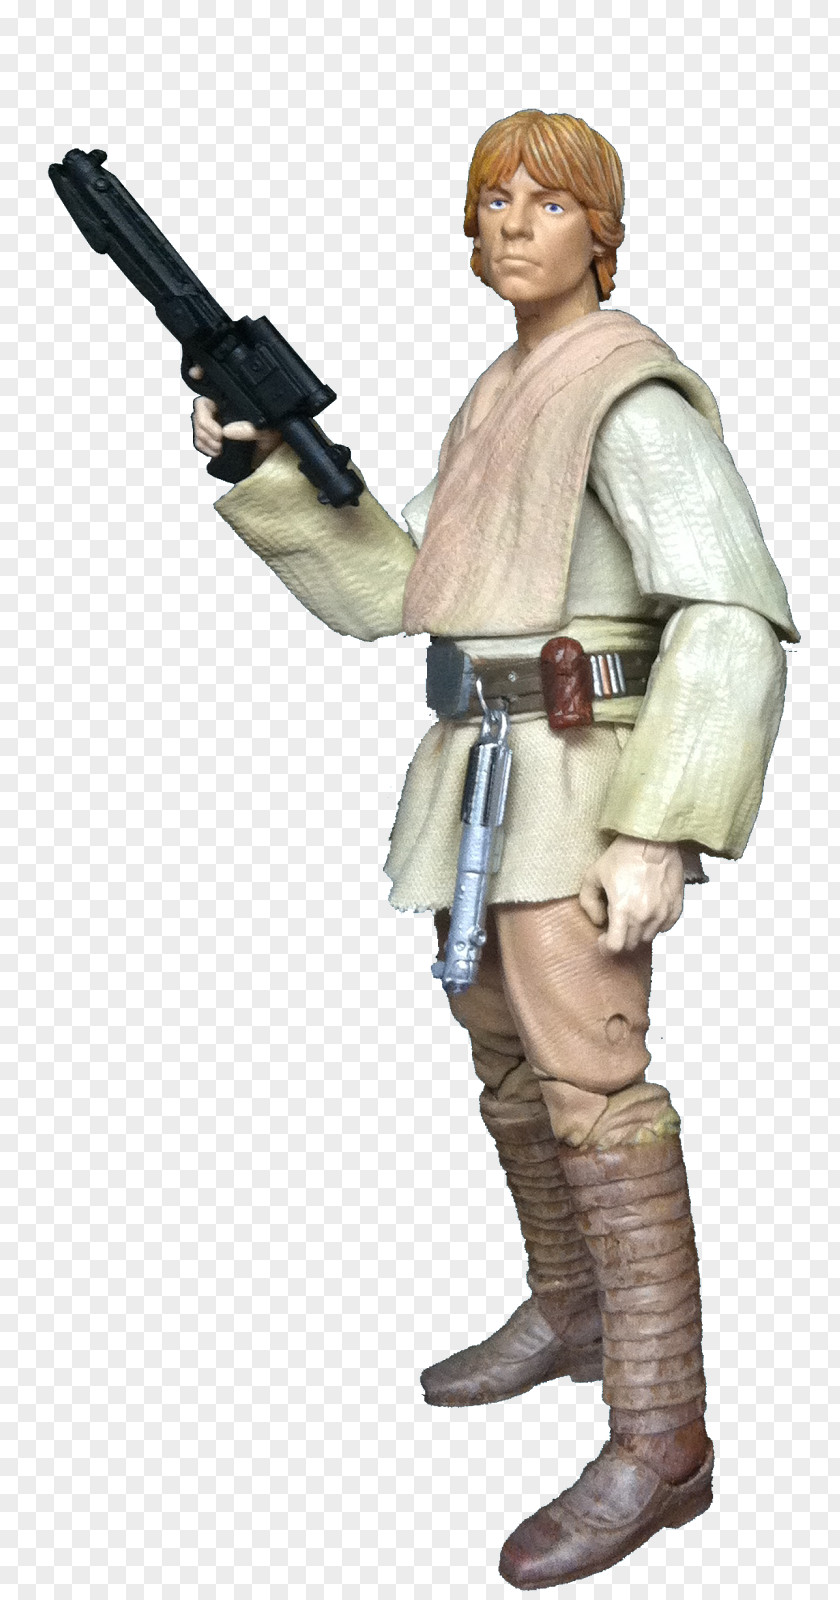 Star Wars Luke Skywalker Obi-Wan Kenobi Anakin Chewbacca PNG